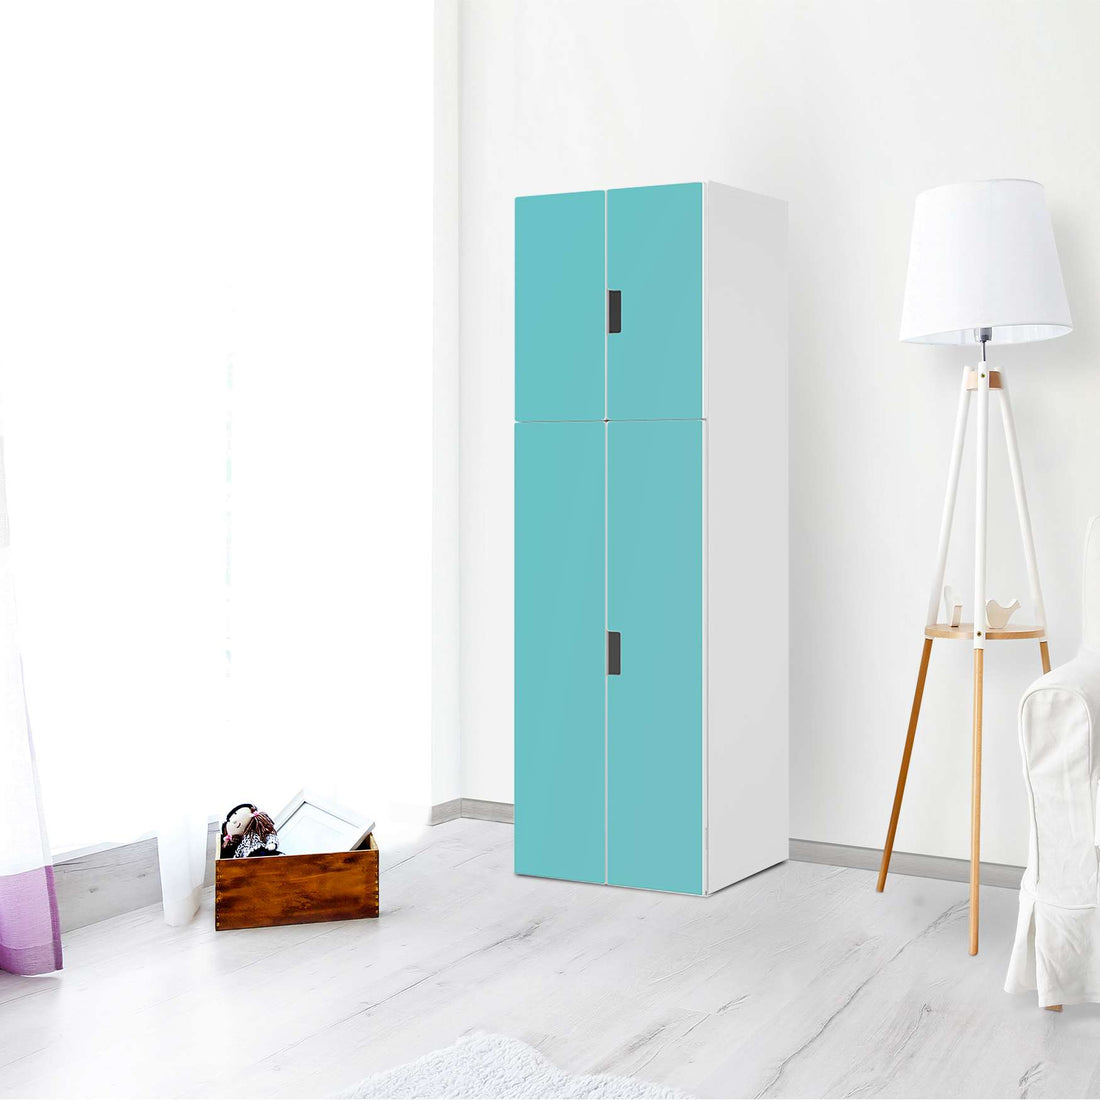 Selbstklebende Folie Türkisgrün Light - IKEA Stuva kombiniert - 2 große Türen und 2 kleine Türen (Kombination 2) - Wohnzimmer